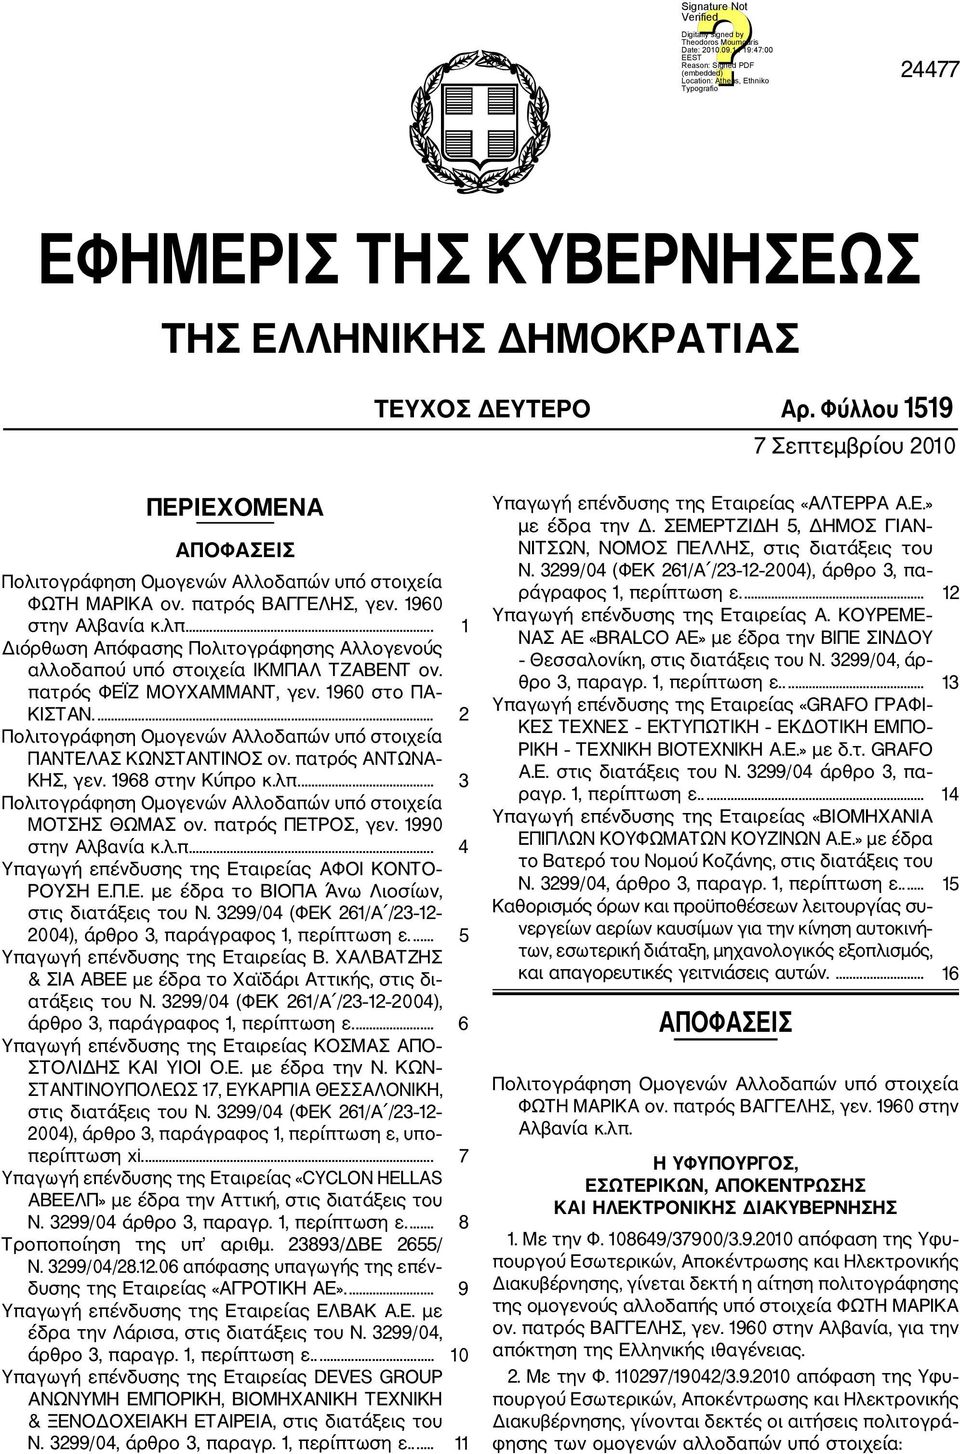 1968 στην Κύπρο κ.λπ.... 3 ΜΟΤΣΗΣ ΘΩΜΑΣ ον. πατρός ΠΕΤΡΟΣ, γεν. 1990 στην Αλβανία κ.λ.π.... 4 Υπαγωγή επένδυσης της Eταιρείας ΑΦΟΙ ΚΟΝΤΟ ΡΟΥΣΗ Ε.Π.Ε. με έδρα το ΒΙΟΠΑ Άνω Λιοσίων, στις διατάξεις του Ν.